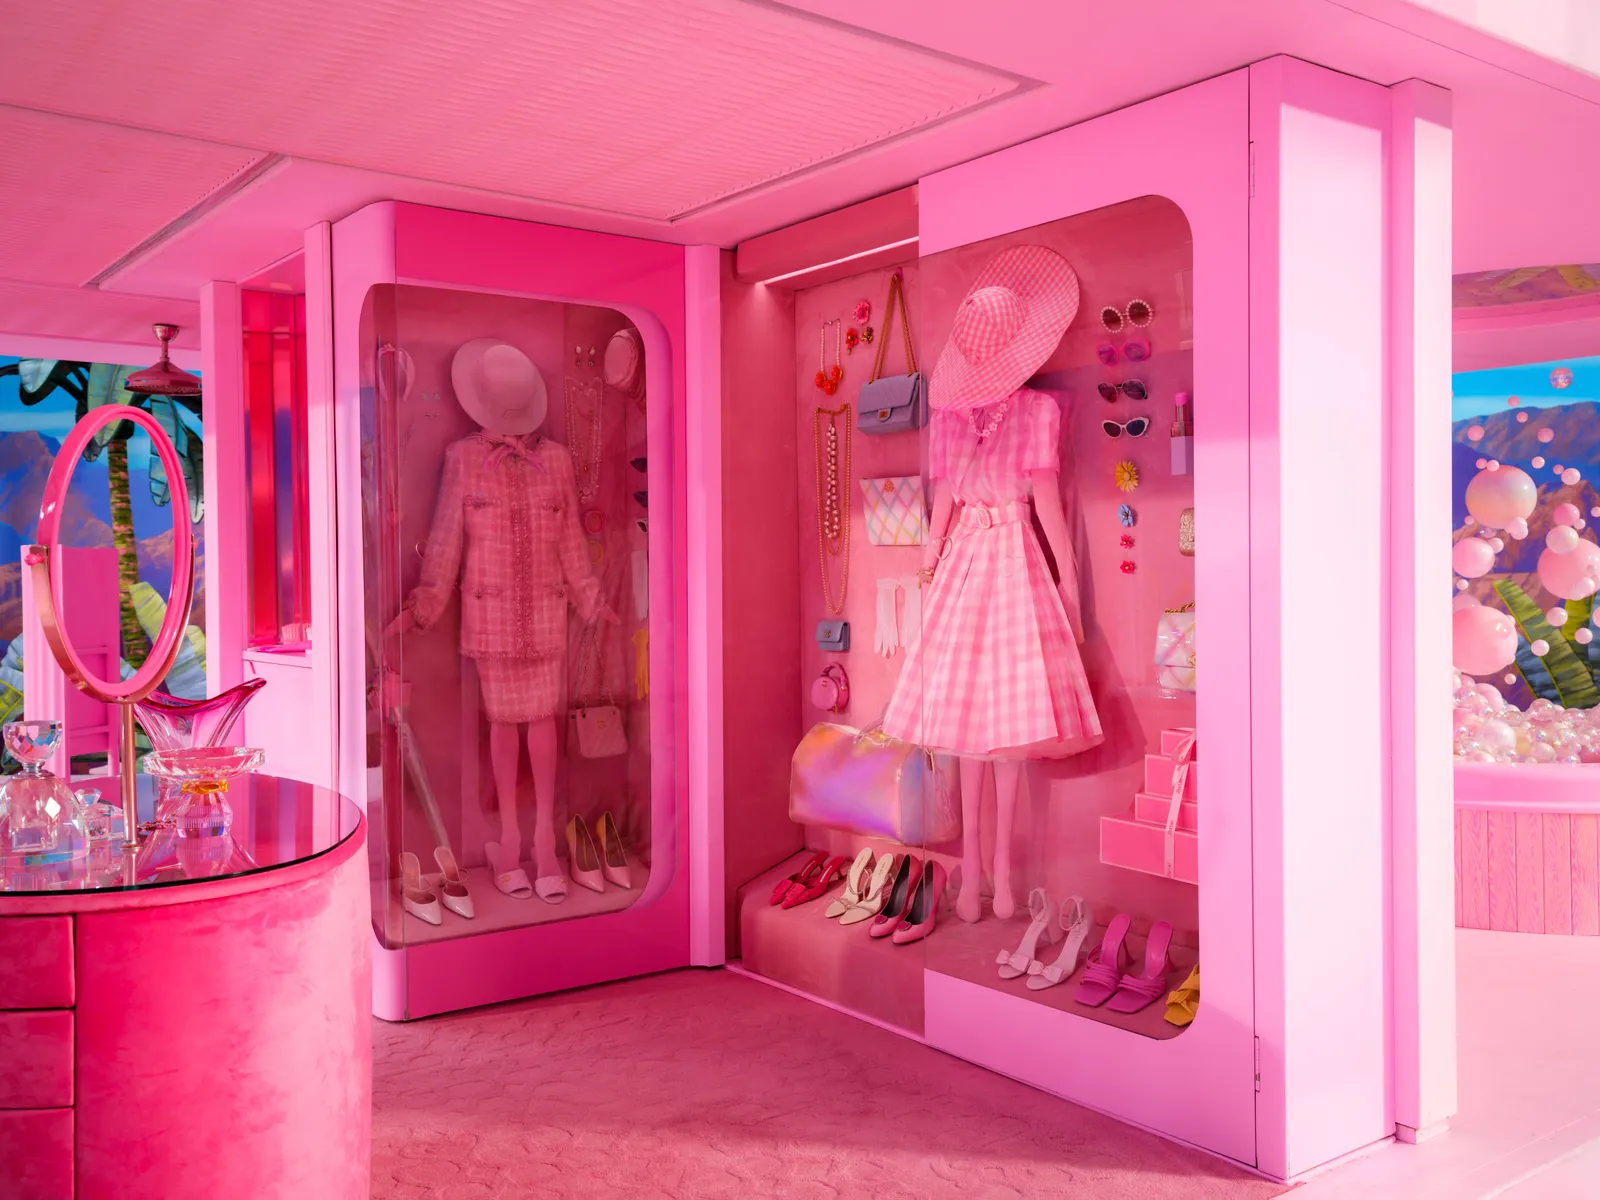 Trên tầng hai, tủ quần áo không cửa ngăn của Barbie có các hộp trưng bày hộp đồ chơi được gắn với trang phục